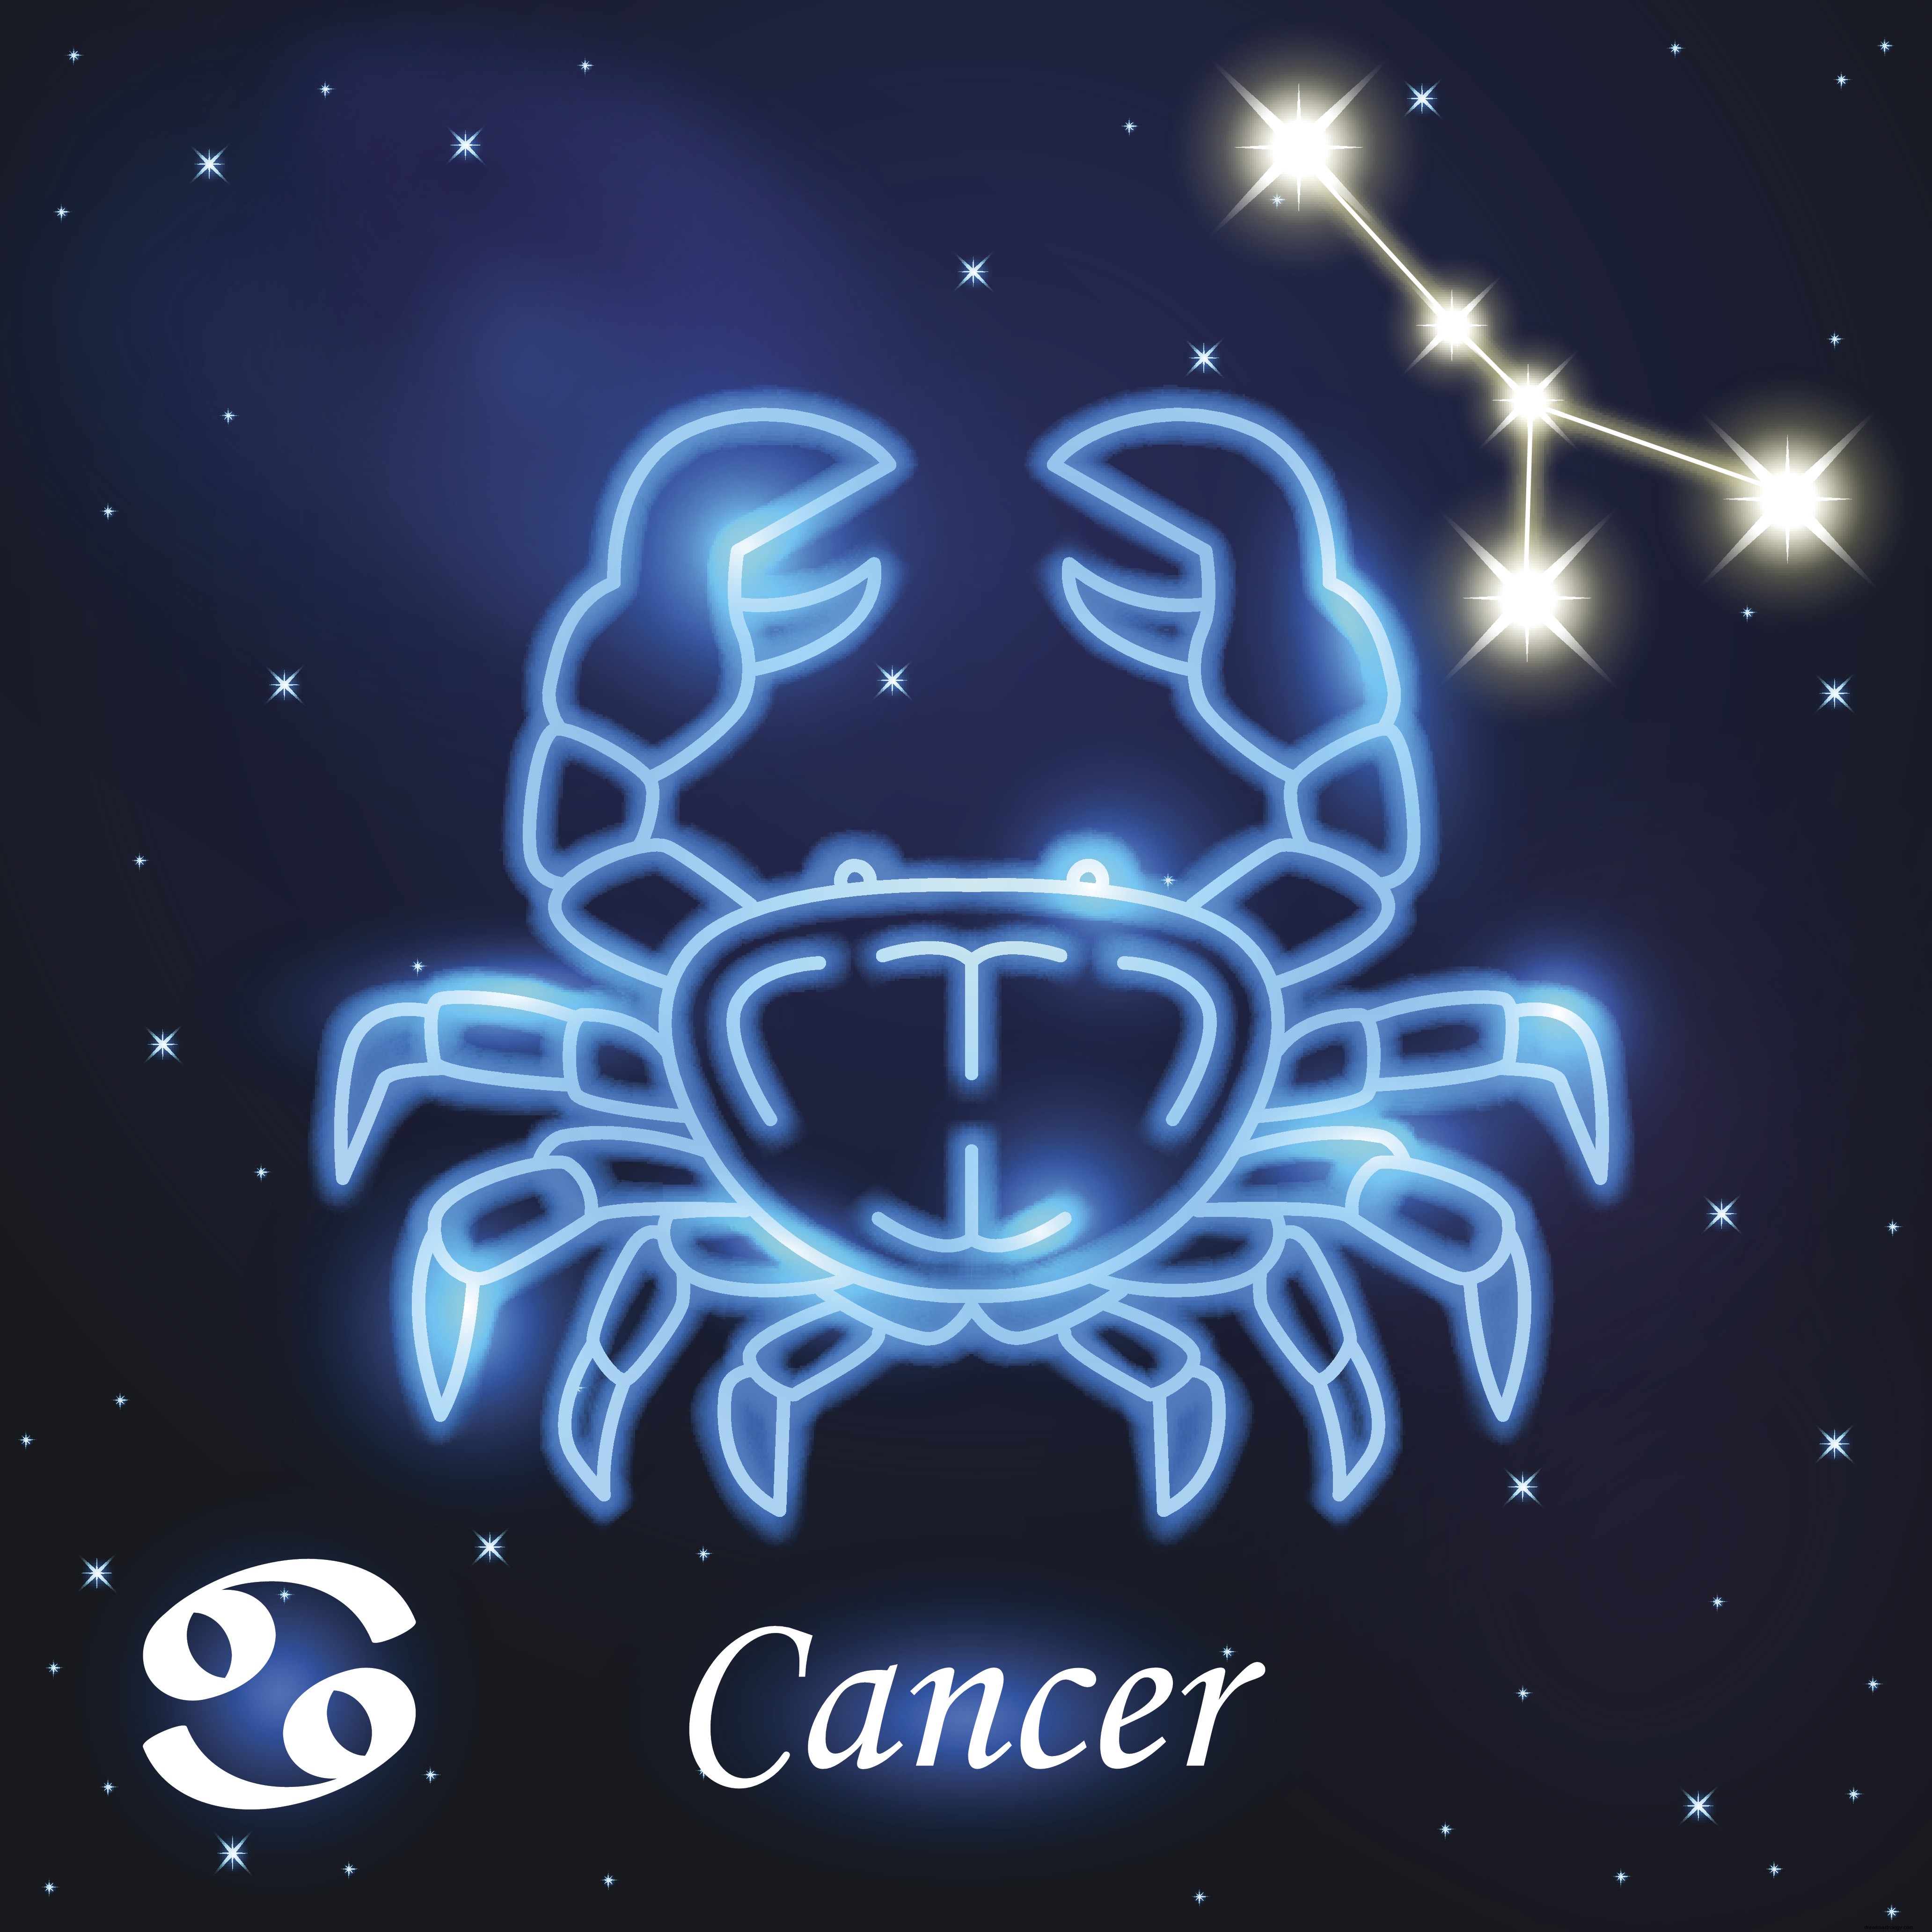 Týdenní horoskop od 16. prosince do 22. prosince:Rak, Leo je vaše astrologická předpověď na týden dopředu 